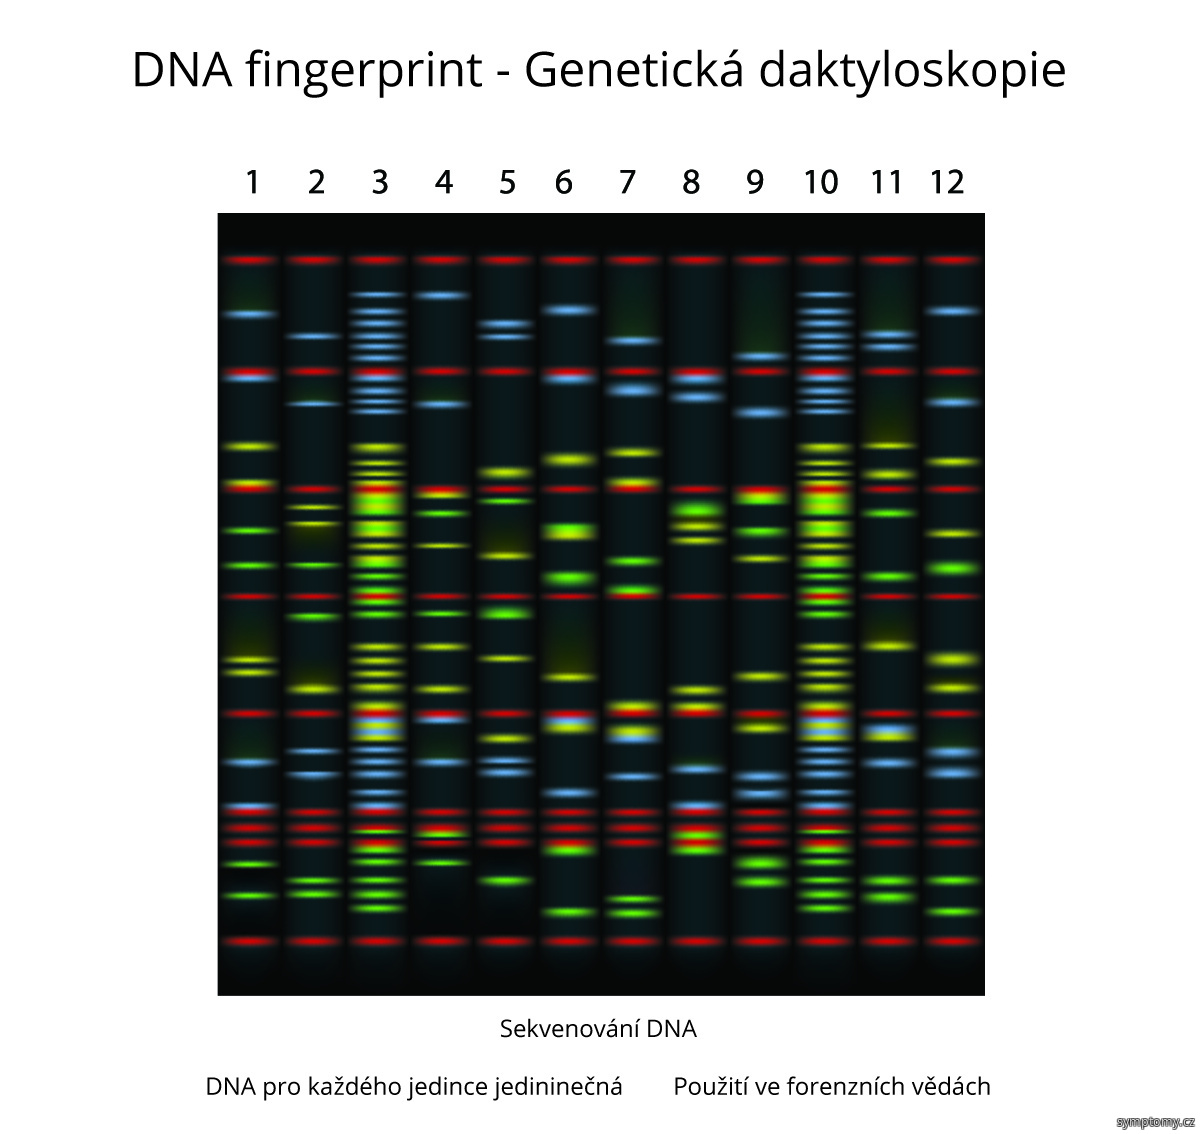 DNA fingerprint - Genetická daktyloskopie